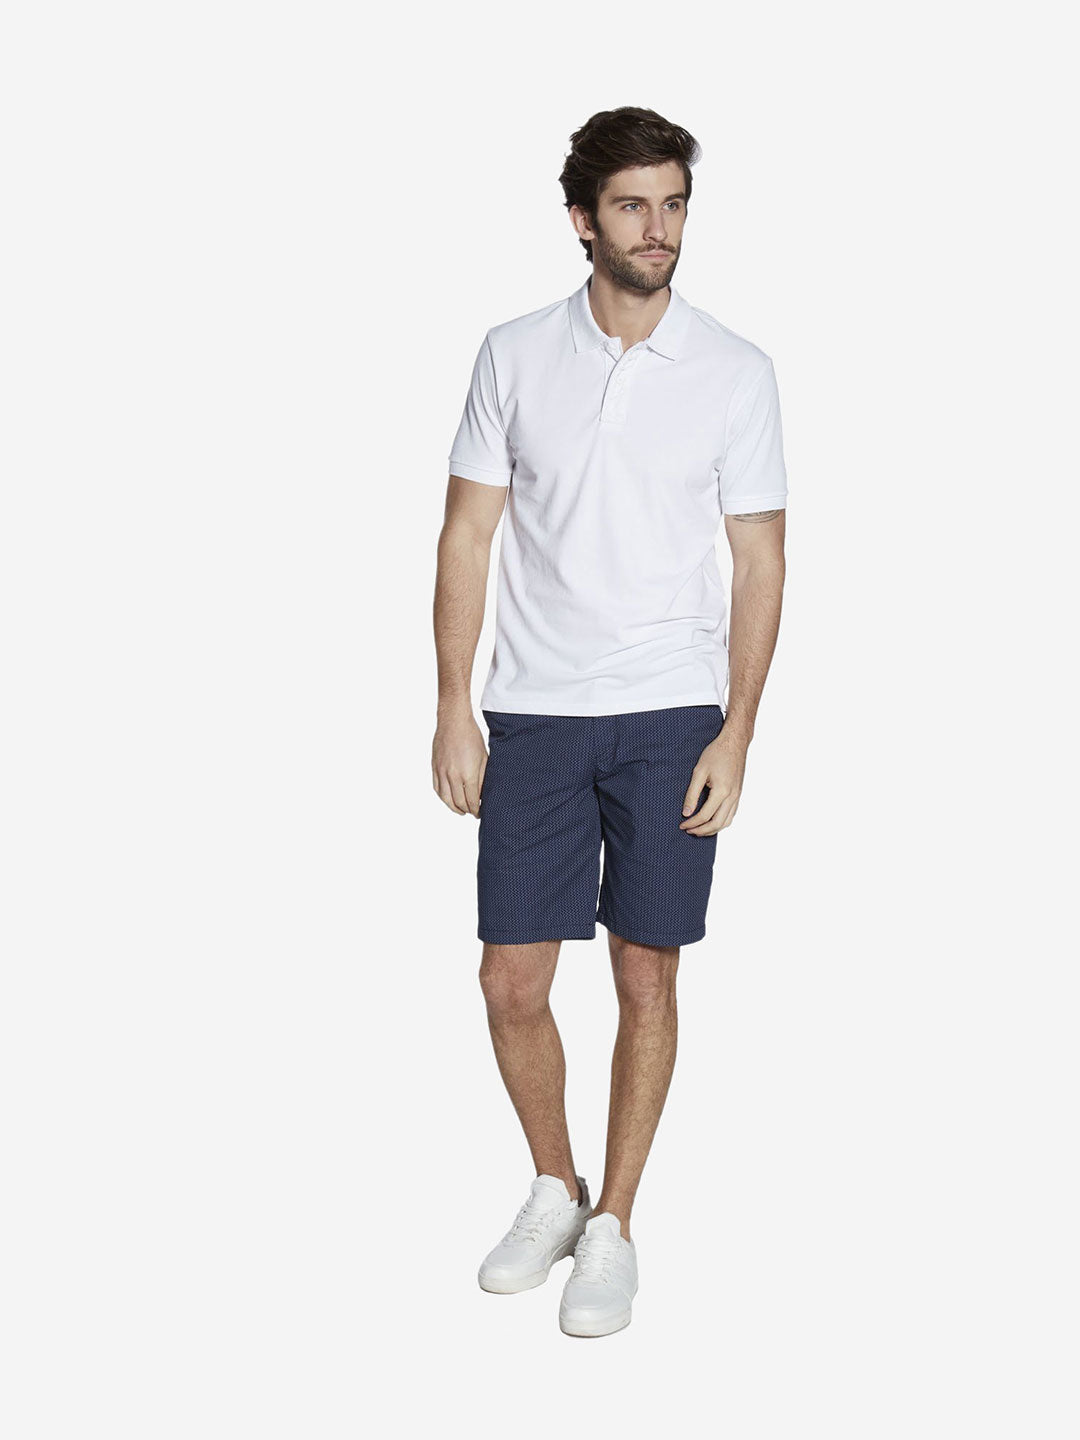 Westsport White Slim Fit Polo T-Shirt | White Slim Fit Polo T-Shirt for Men Full View - Westside